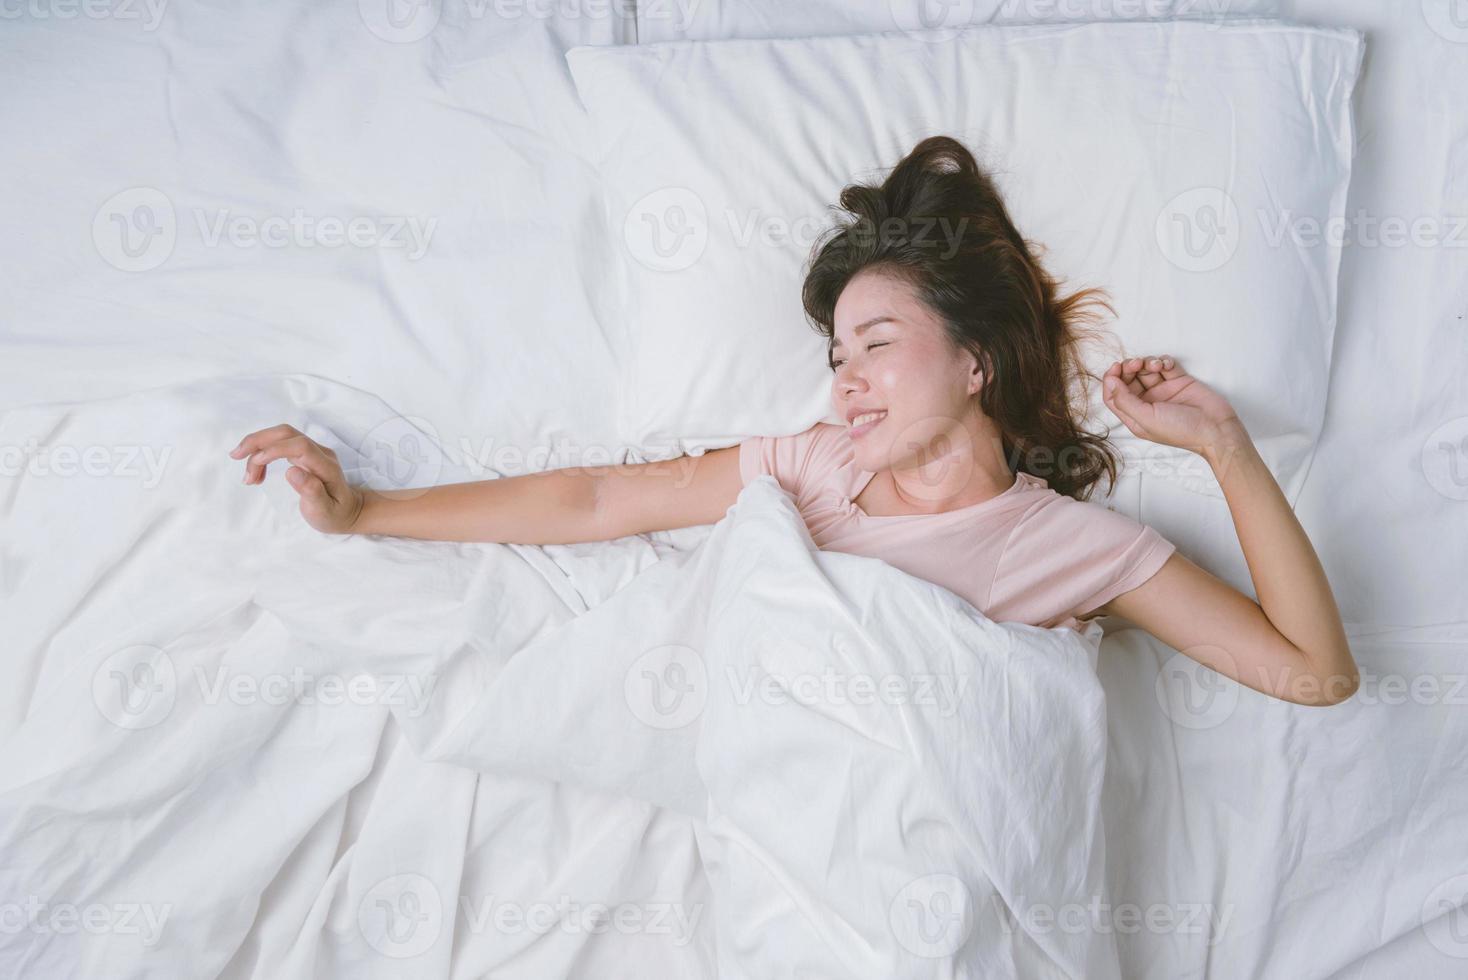 jonge vrouw slaapt goed in bed en knuffelt zacht wit kussen. tienermeisje rusten. goede nachtrust concept. meisje dat een pyjama draagt, slaapt 's ochtends op een bed in een witte kamer. warme toon. foto